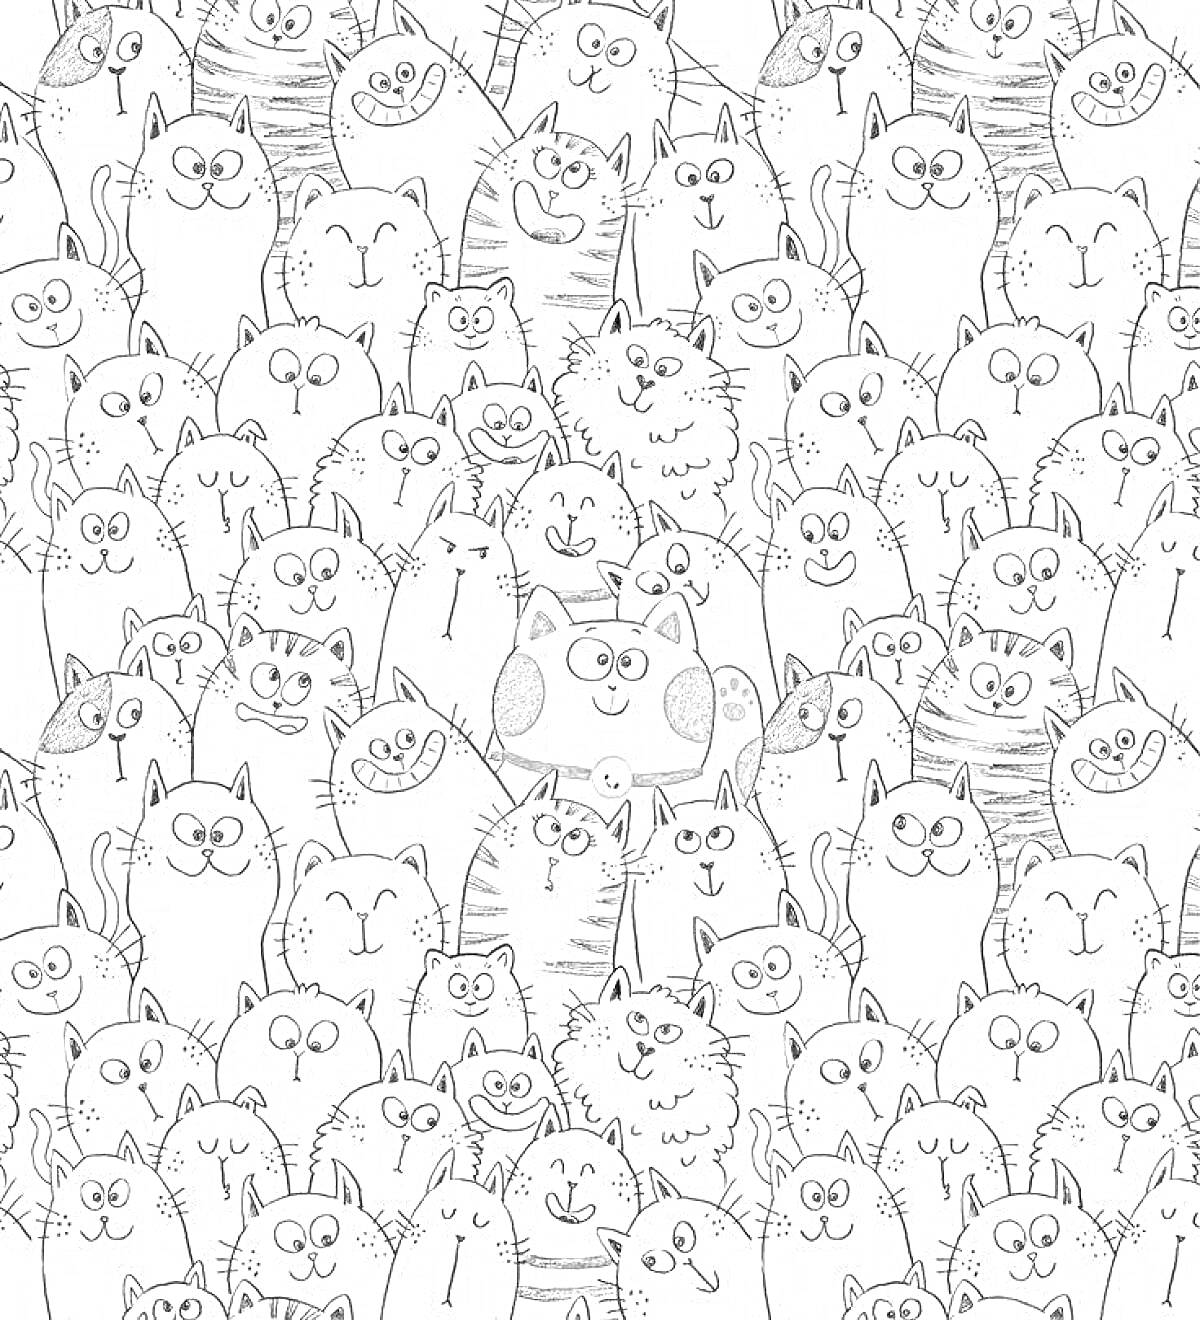 Раскраска много улыбающихся котиков разных пород на одном рисунке, некоторые с пятнами, тигровыми полосками или просто однотонные